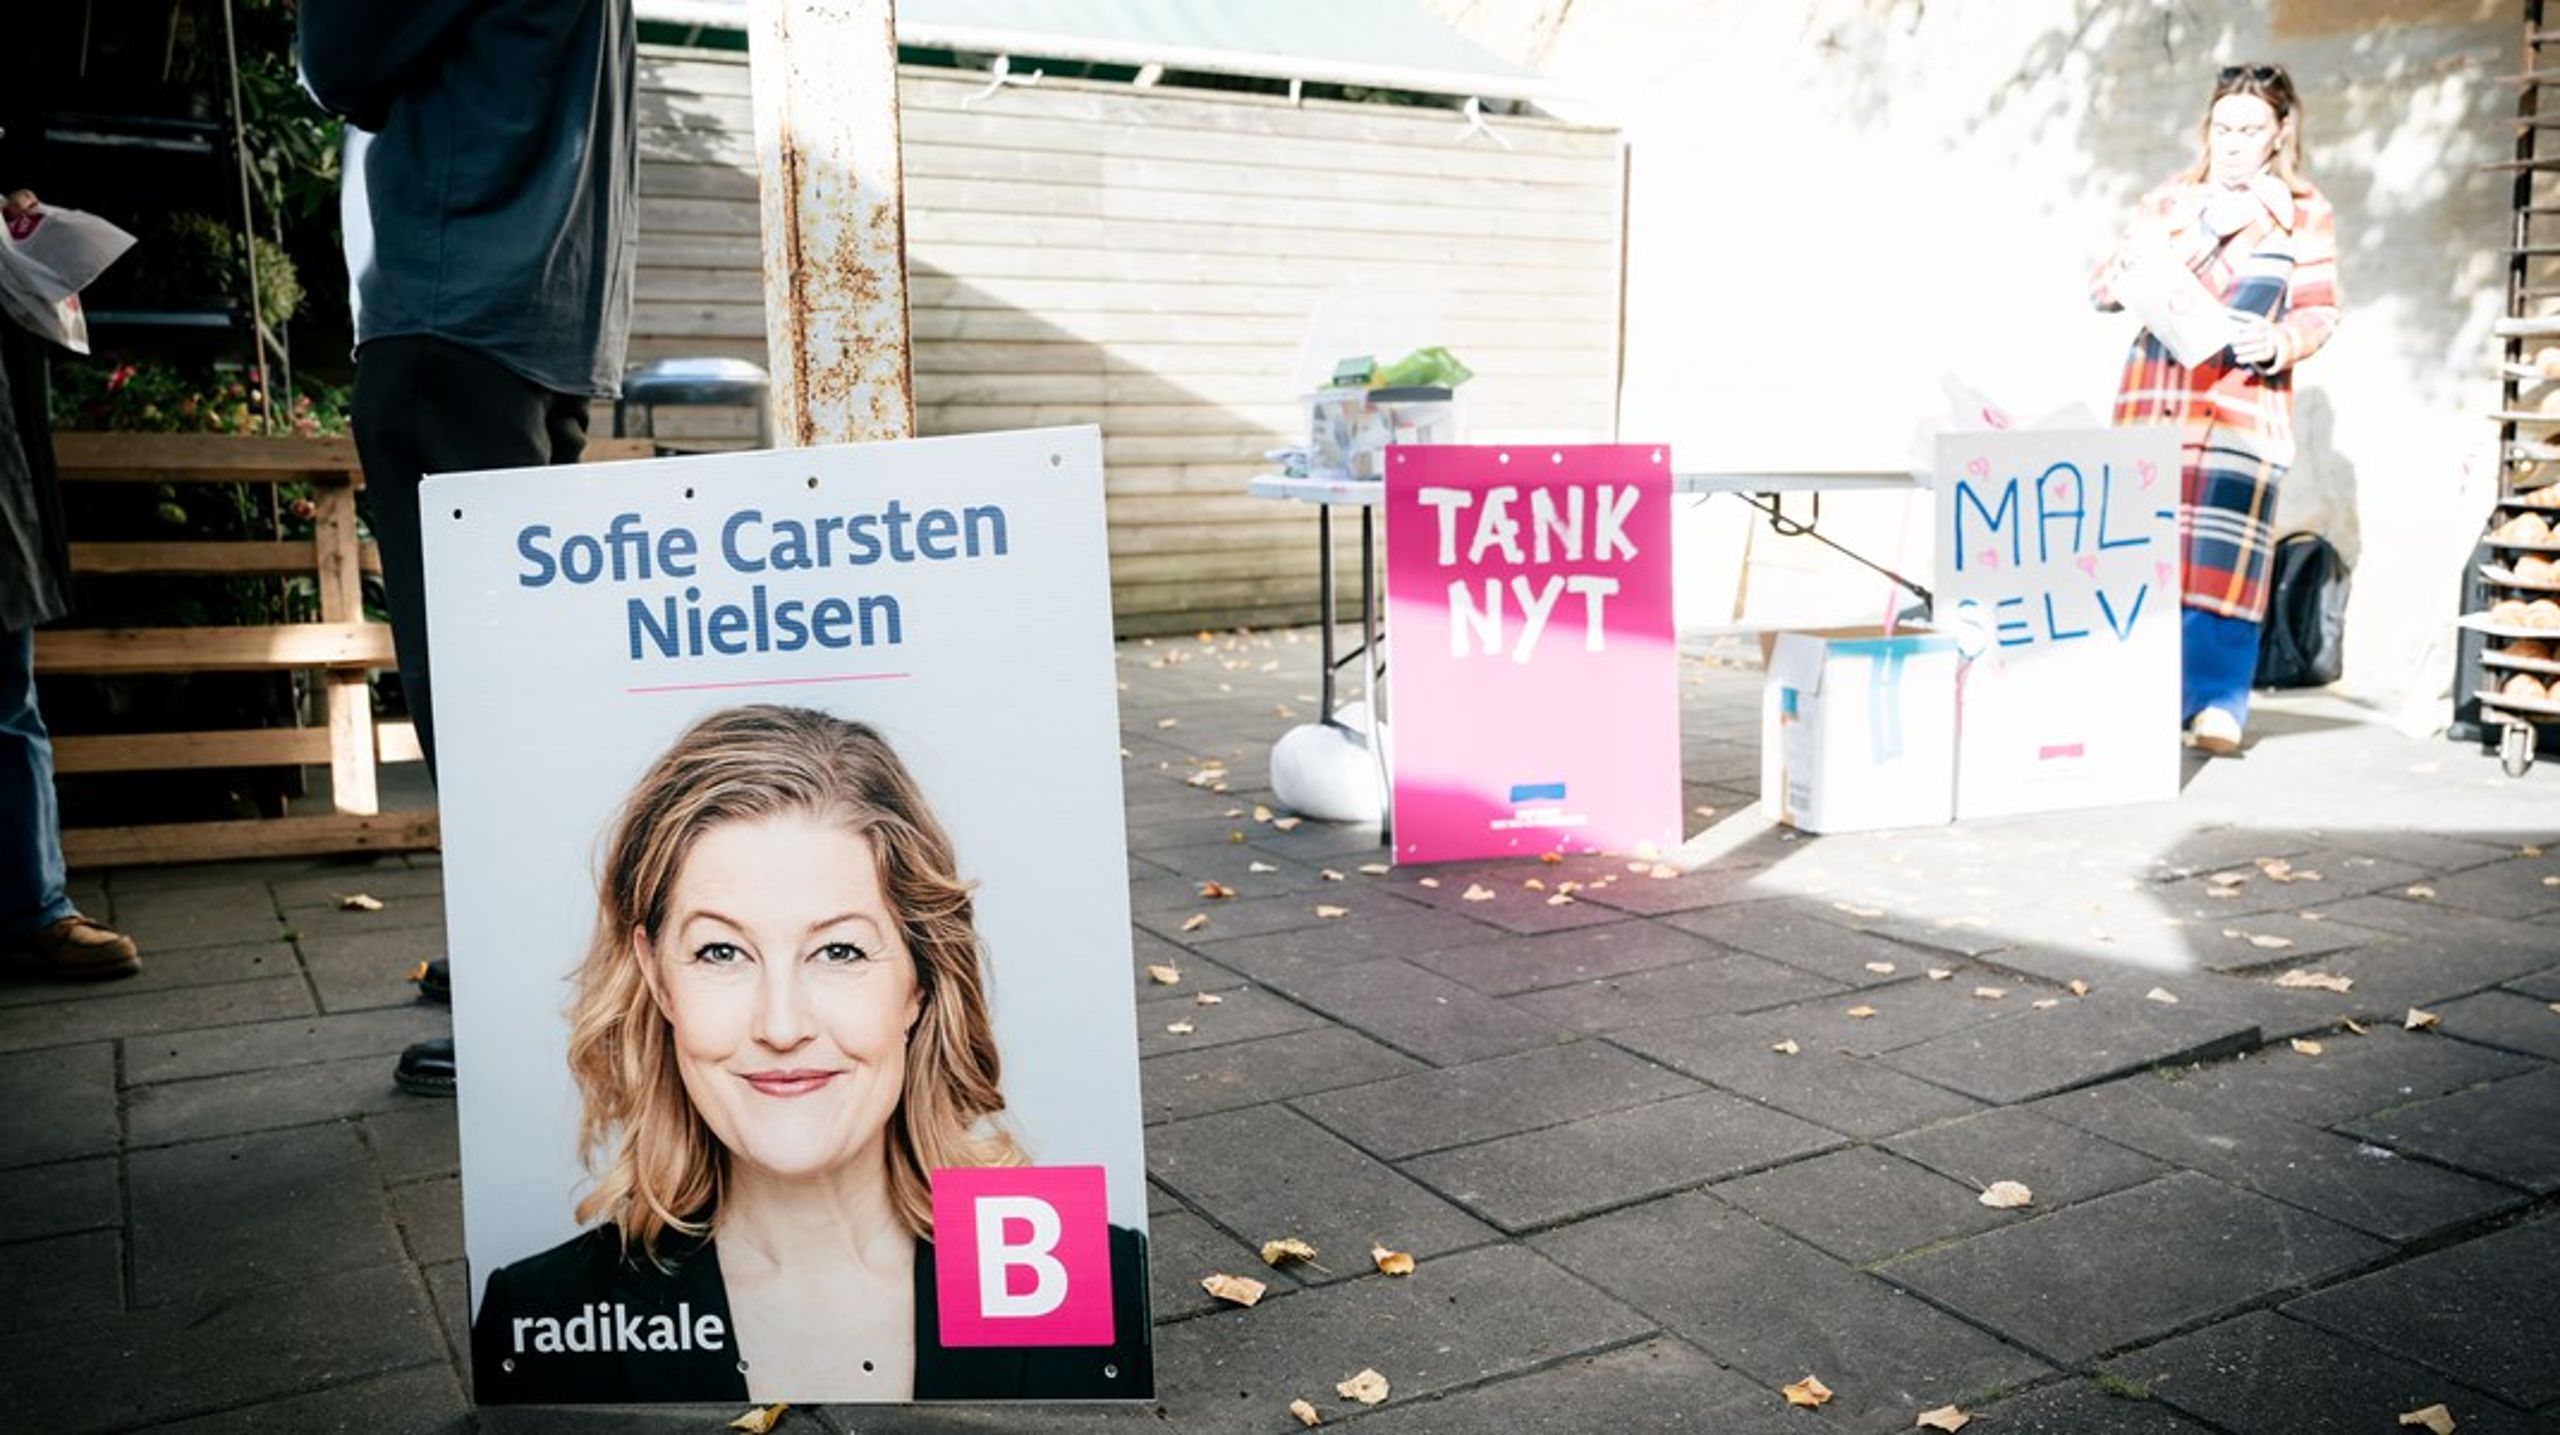 Sofie Carsten Nielsen har været formand for Radikale siden oktober 2020. Hun overtog efter Morten Østergaard, der mistede sit politiske liv som følge af en række sager om krænkende adfærd.